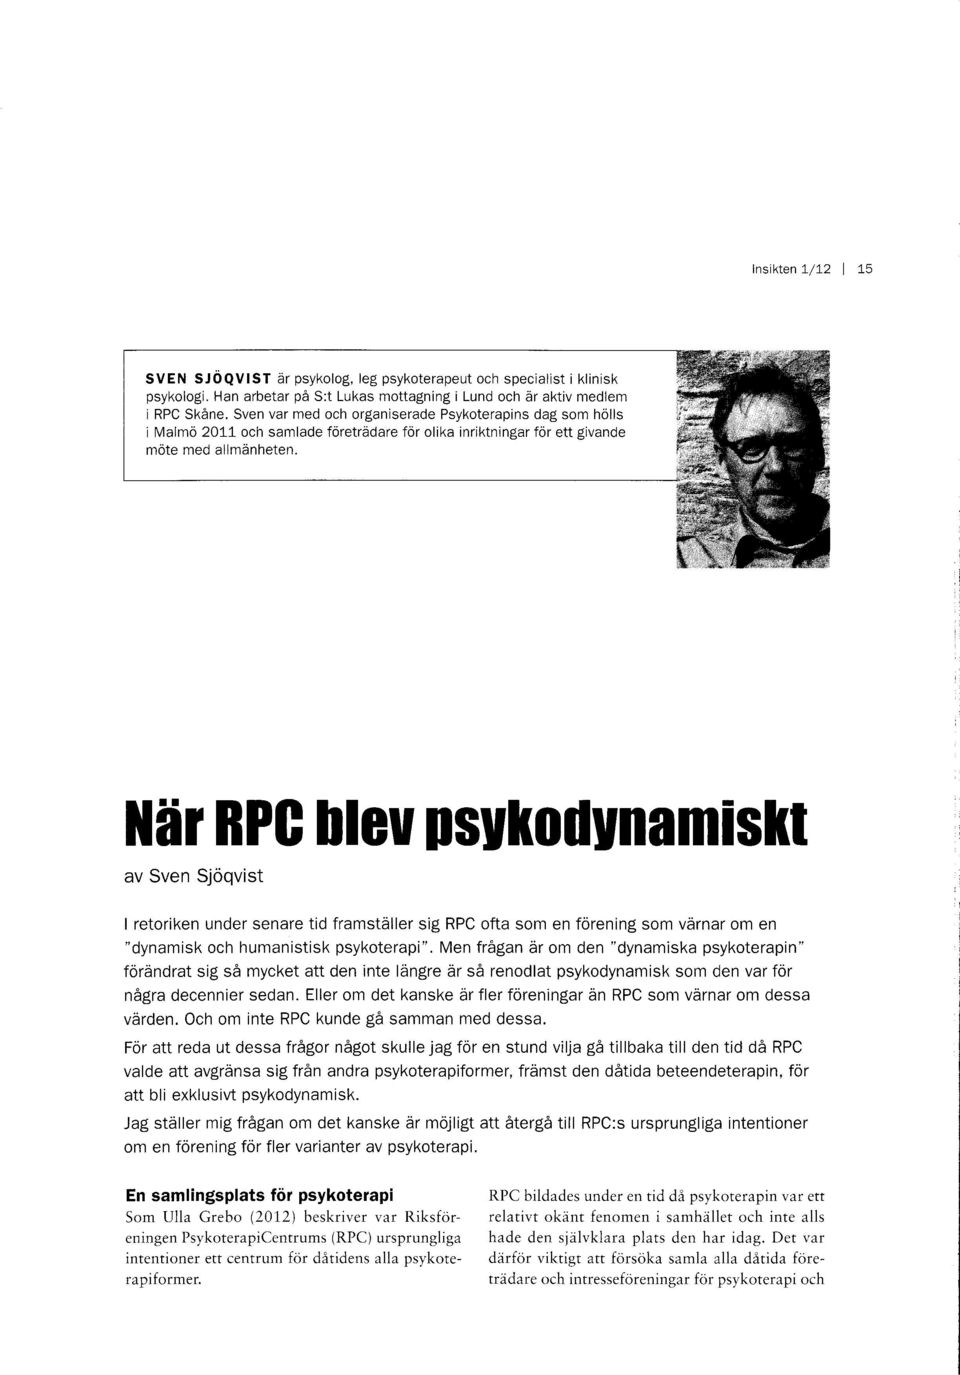 ileir RPG Heu ffiylrodynamislrt av Sven Sjoqvist I retoriken under senare tid framstdller sig RPC ofta som en forening som varnar om en "dynamisk och humanistisk psykoterapi".